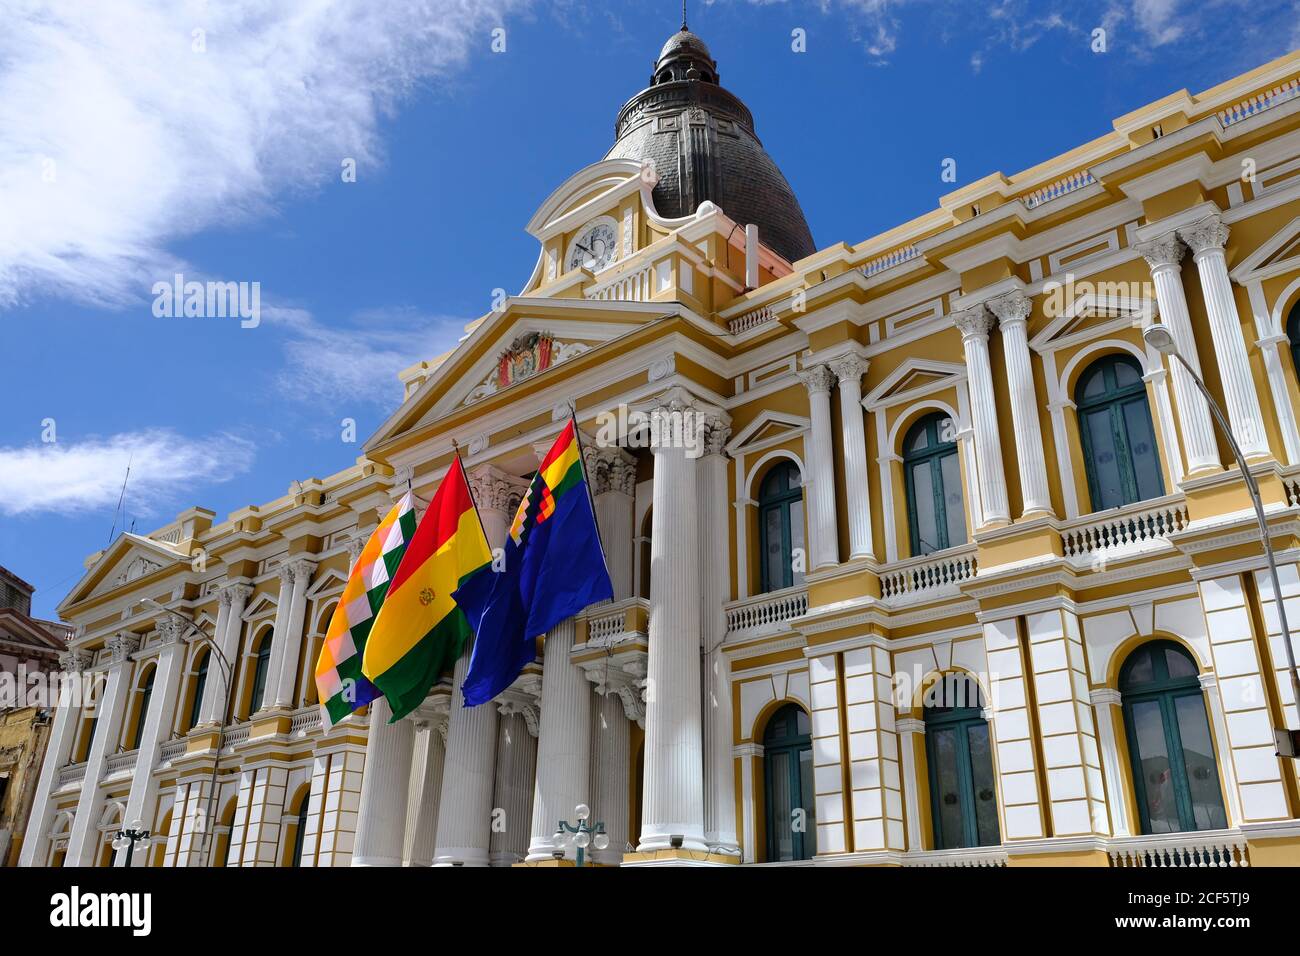 Bolivie la Paz - Palais législatif de Bolivie - Palacio Façade de Legislativo de Bolivie Banque D'Images